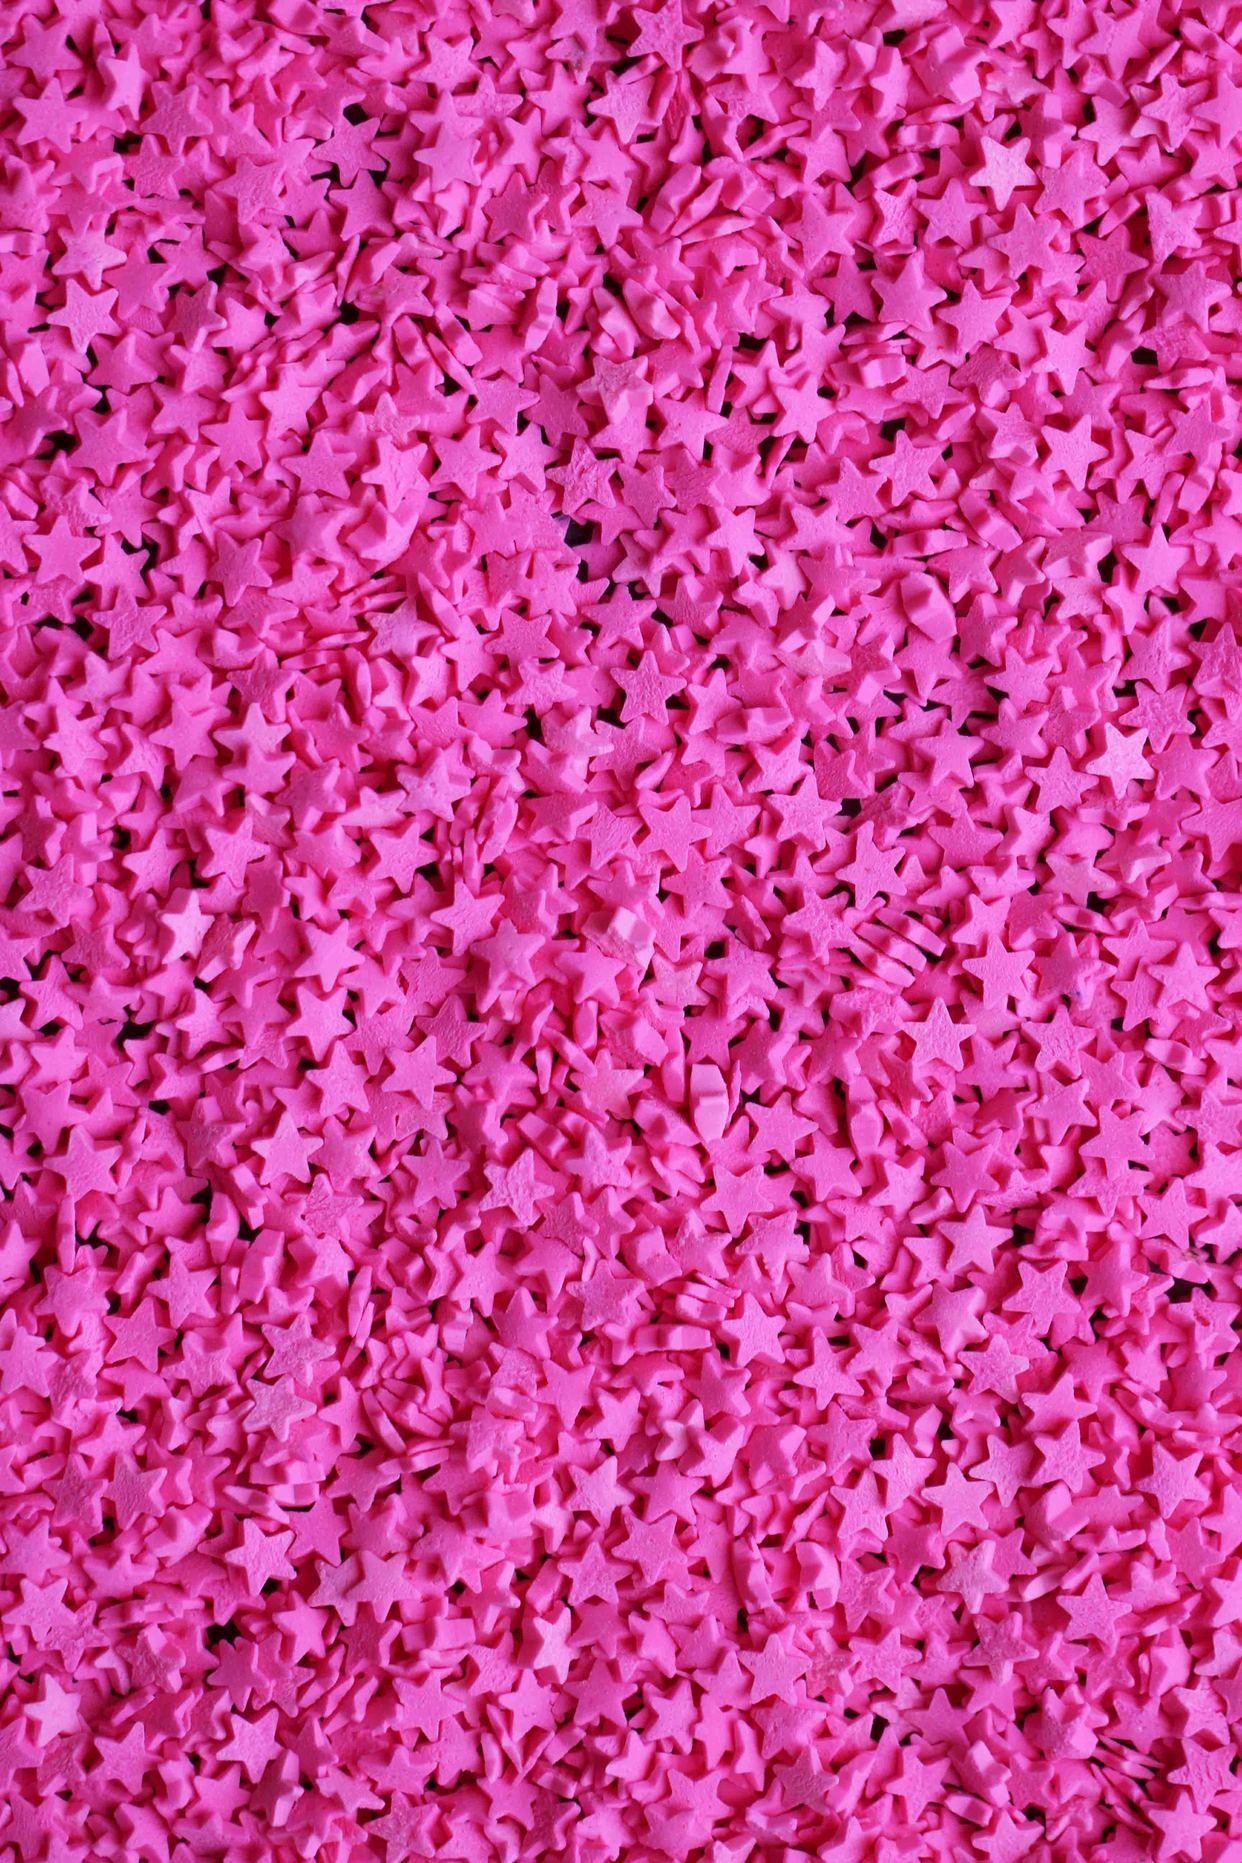 Aesthetic Dark Pink Wallpapers - Top Free Aesthetic Dark Pink